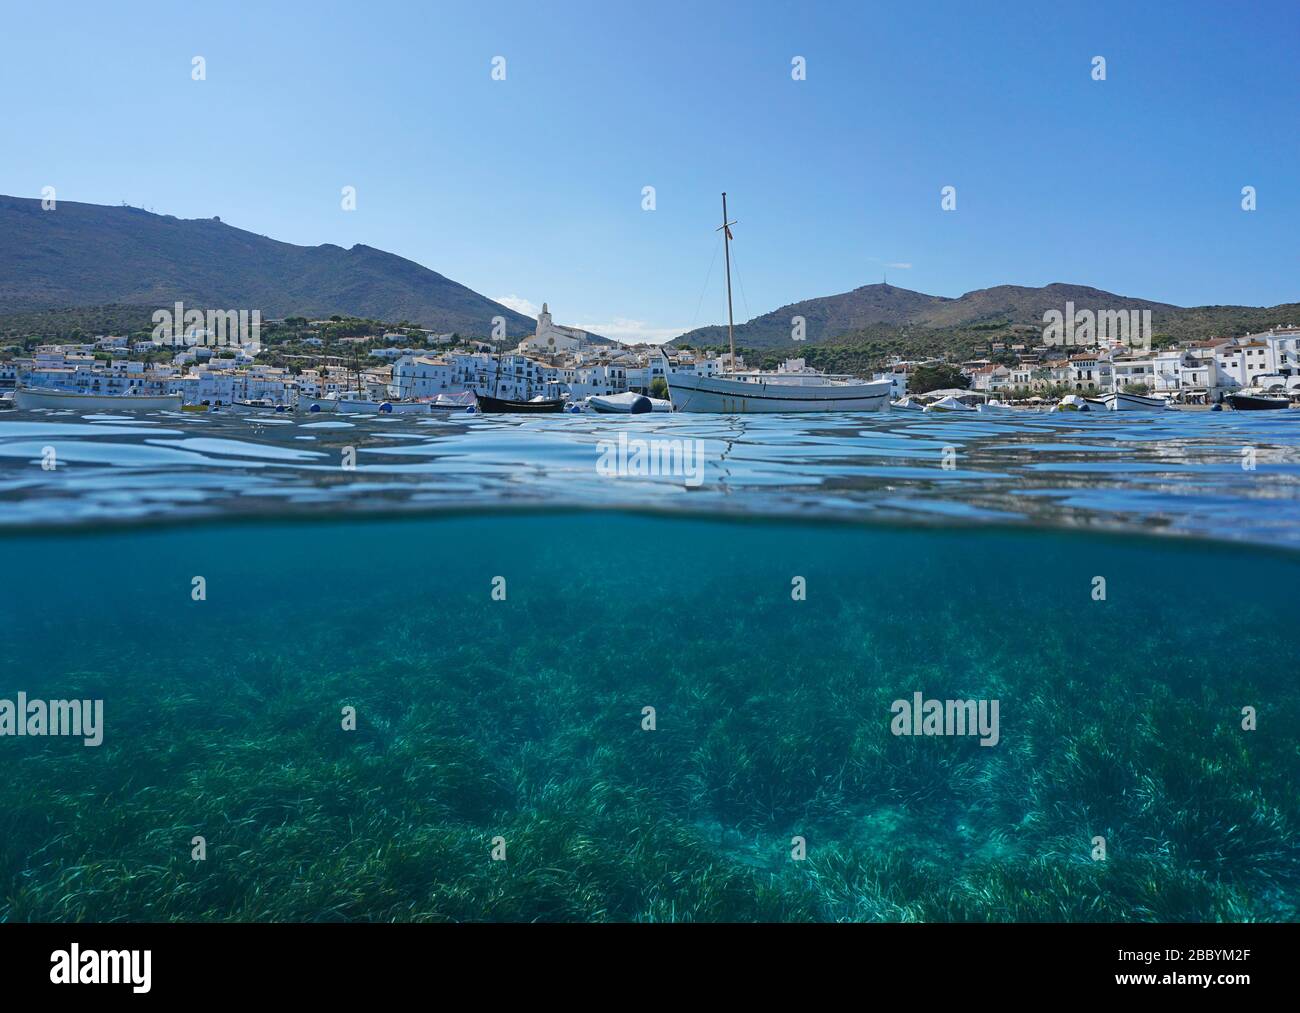 Espagne côte du village de Cadaques avec bateaux et de la mer sous l'eau, vue partagée sur et sous la surface de l'eau, mer méditerranéenne, Costa Brava, Catalogne Banque D'Images